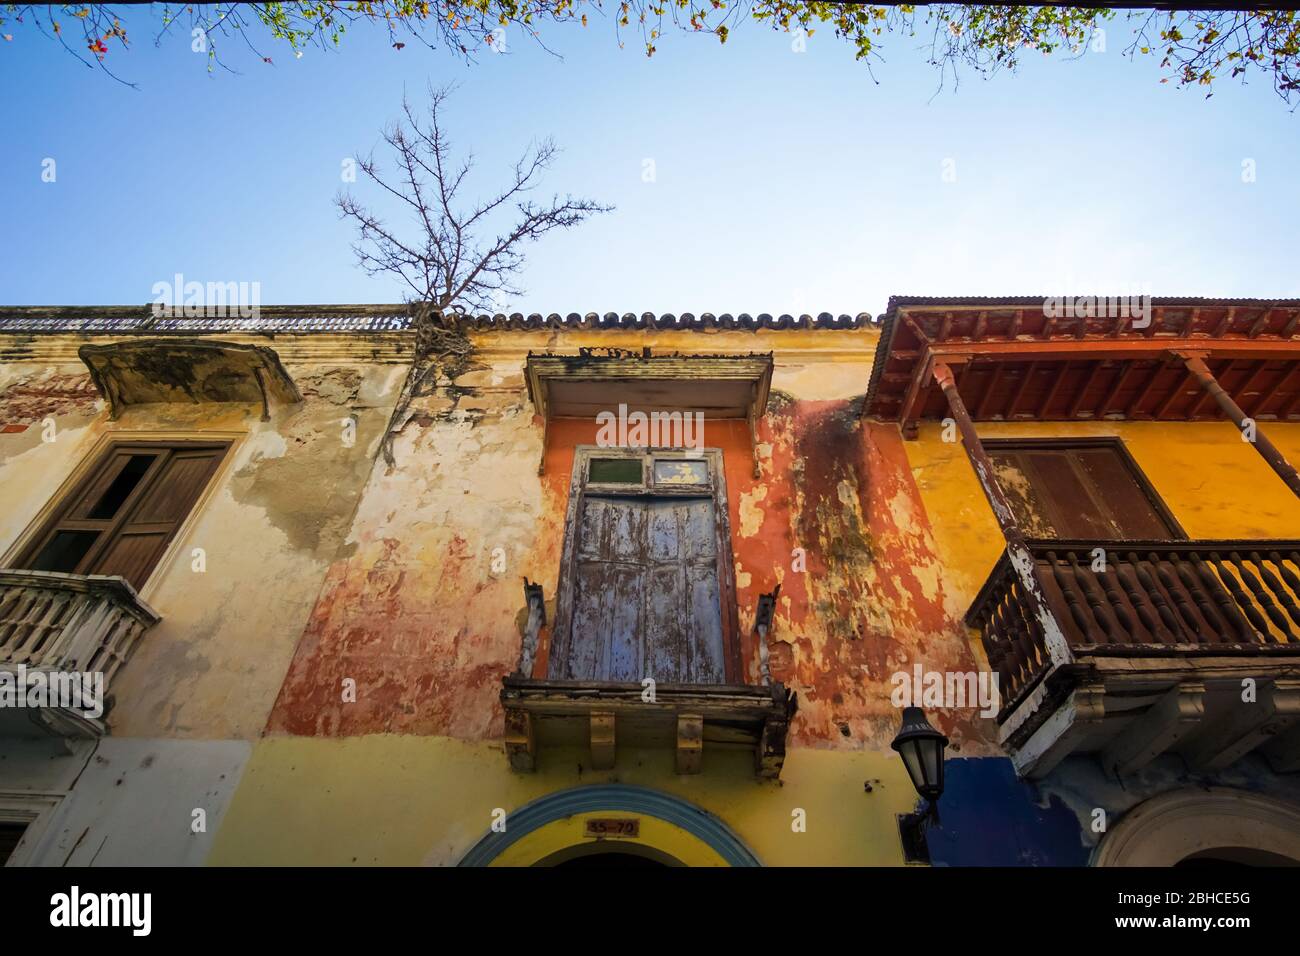 vista desde la calle de la fachada de una antigua casa en ruinas cartagena colombia Stock Photo